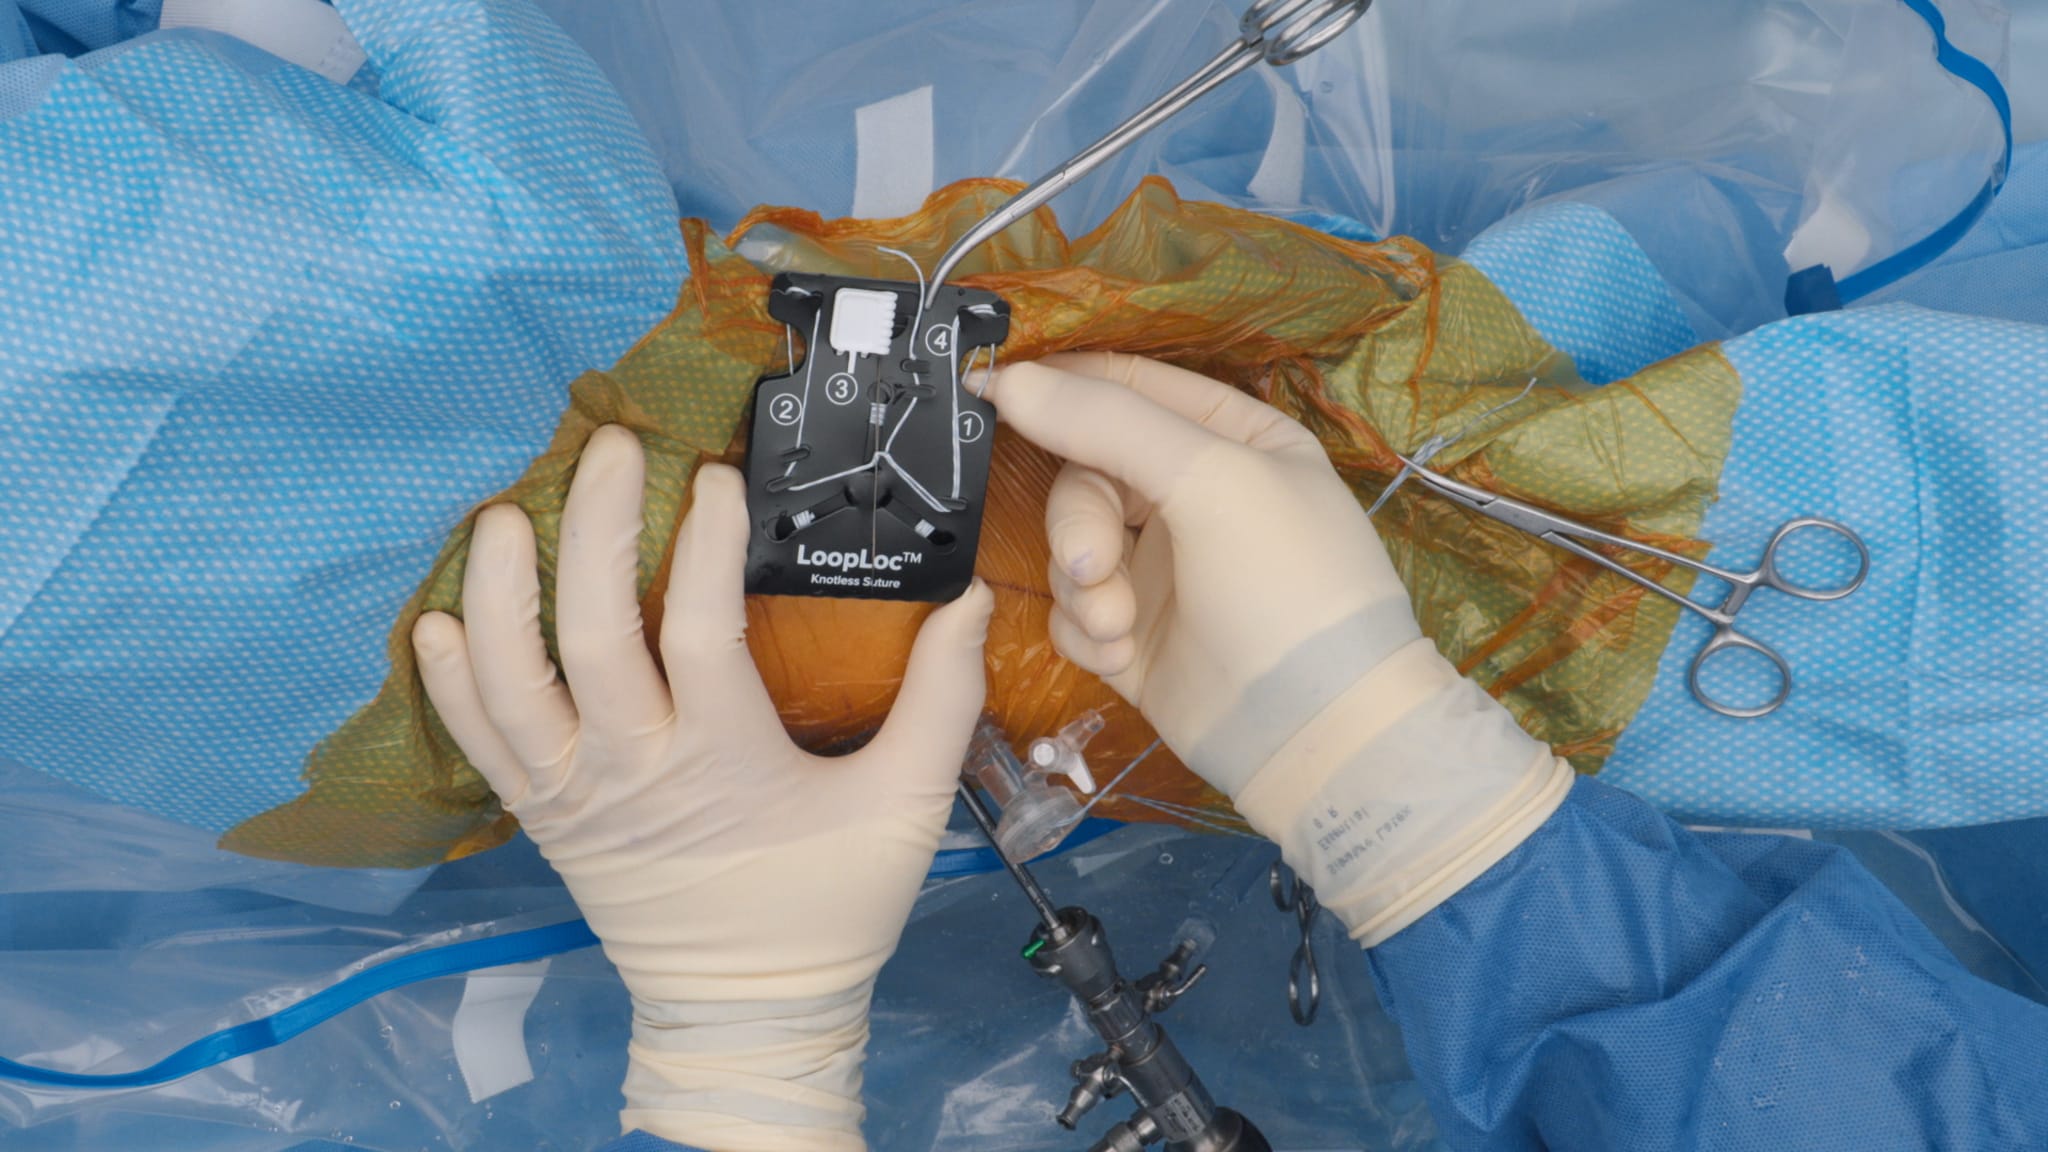 Capsular Closure Surgical Technique Using the LoopLoc™ Knotless Implant CapsuleStitch™ Suture Passer